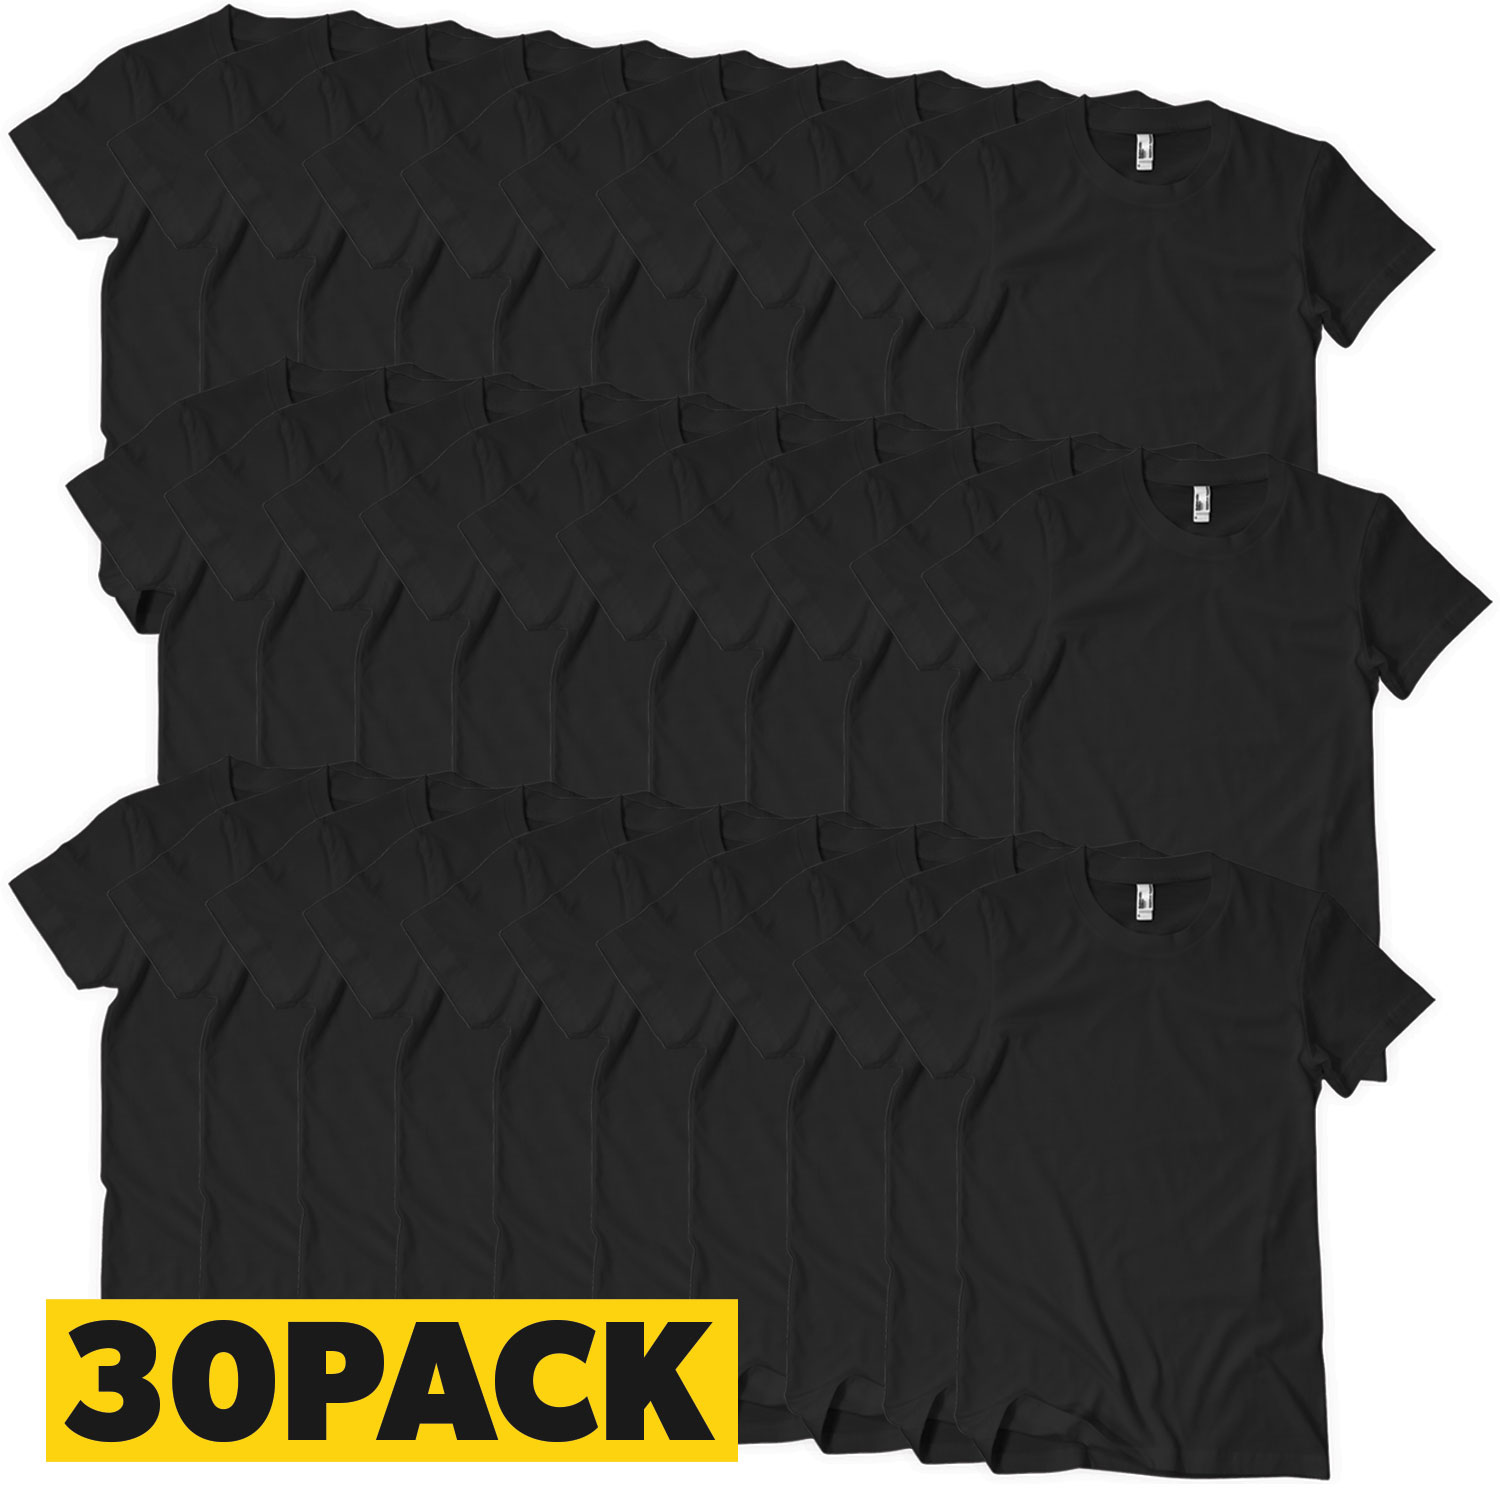 T-Shirts Megapack Sort - 30 pack